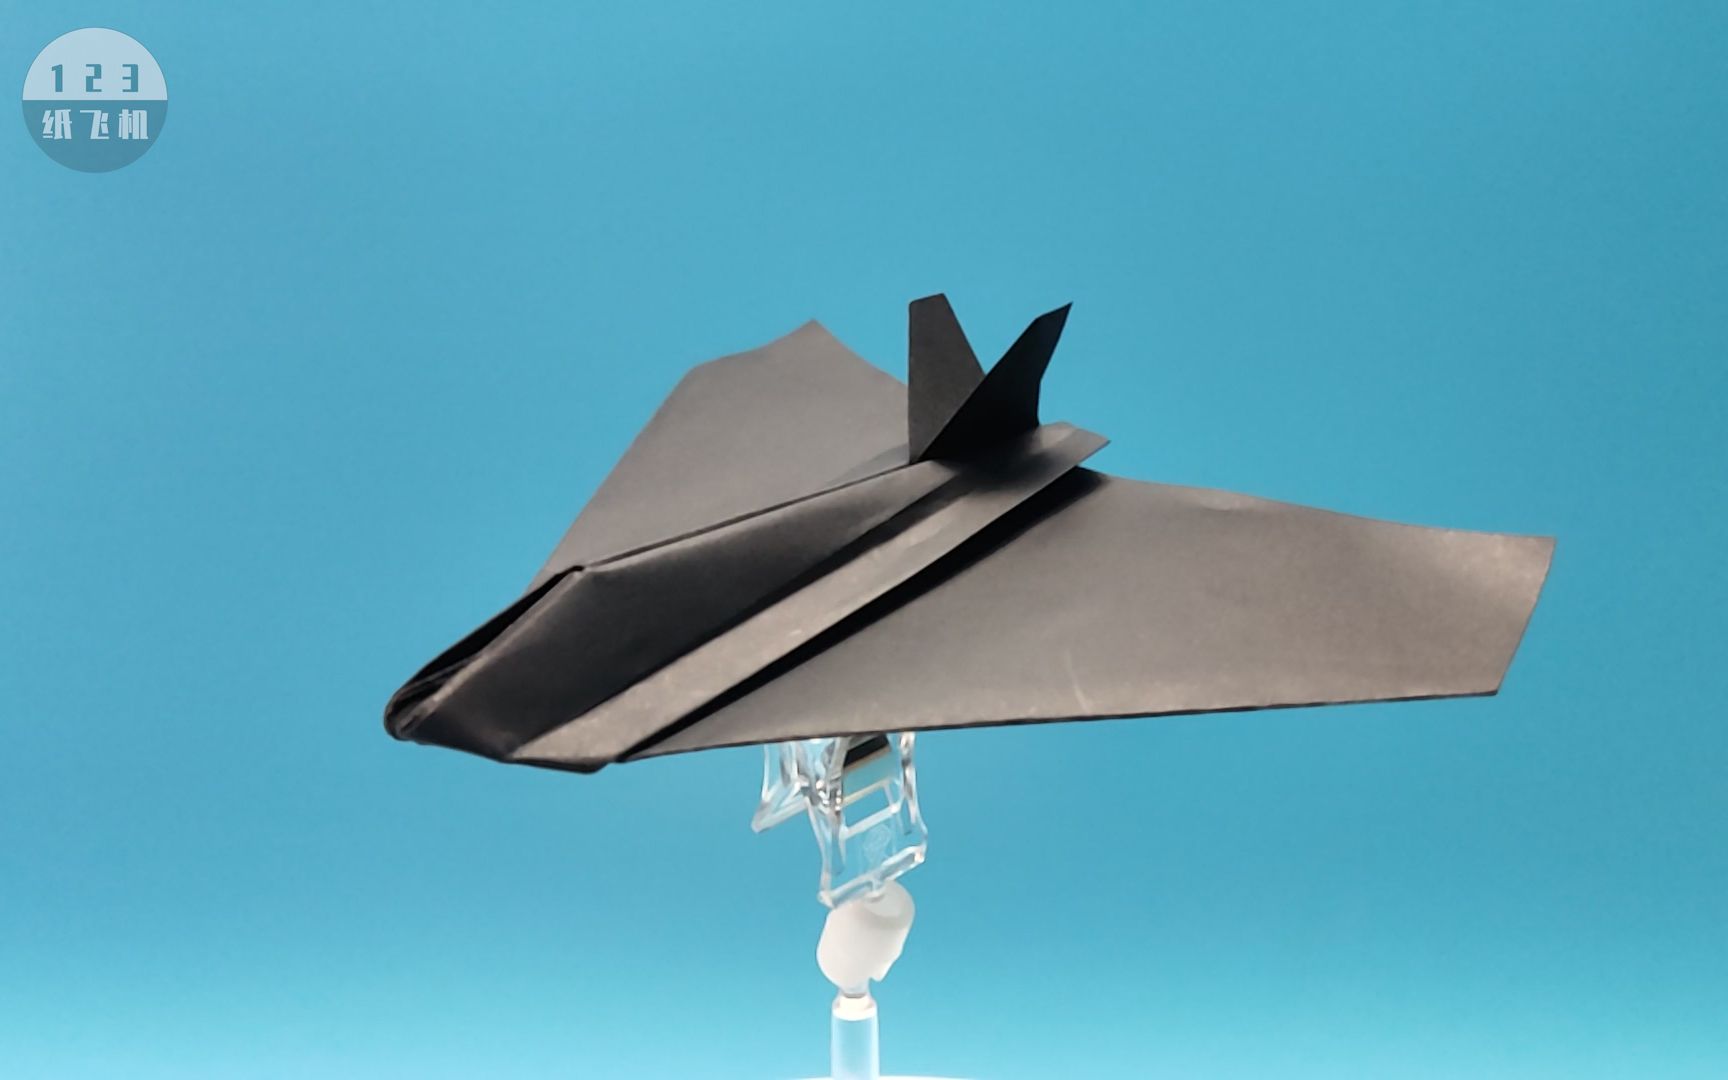 【仿真纸飞机】可以飞的简易版F-117夜鹰纸飞机